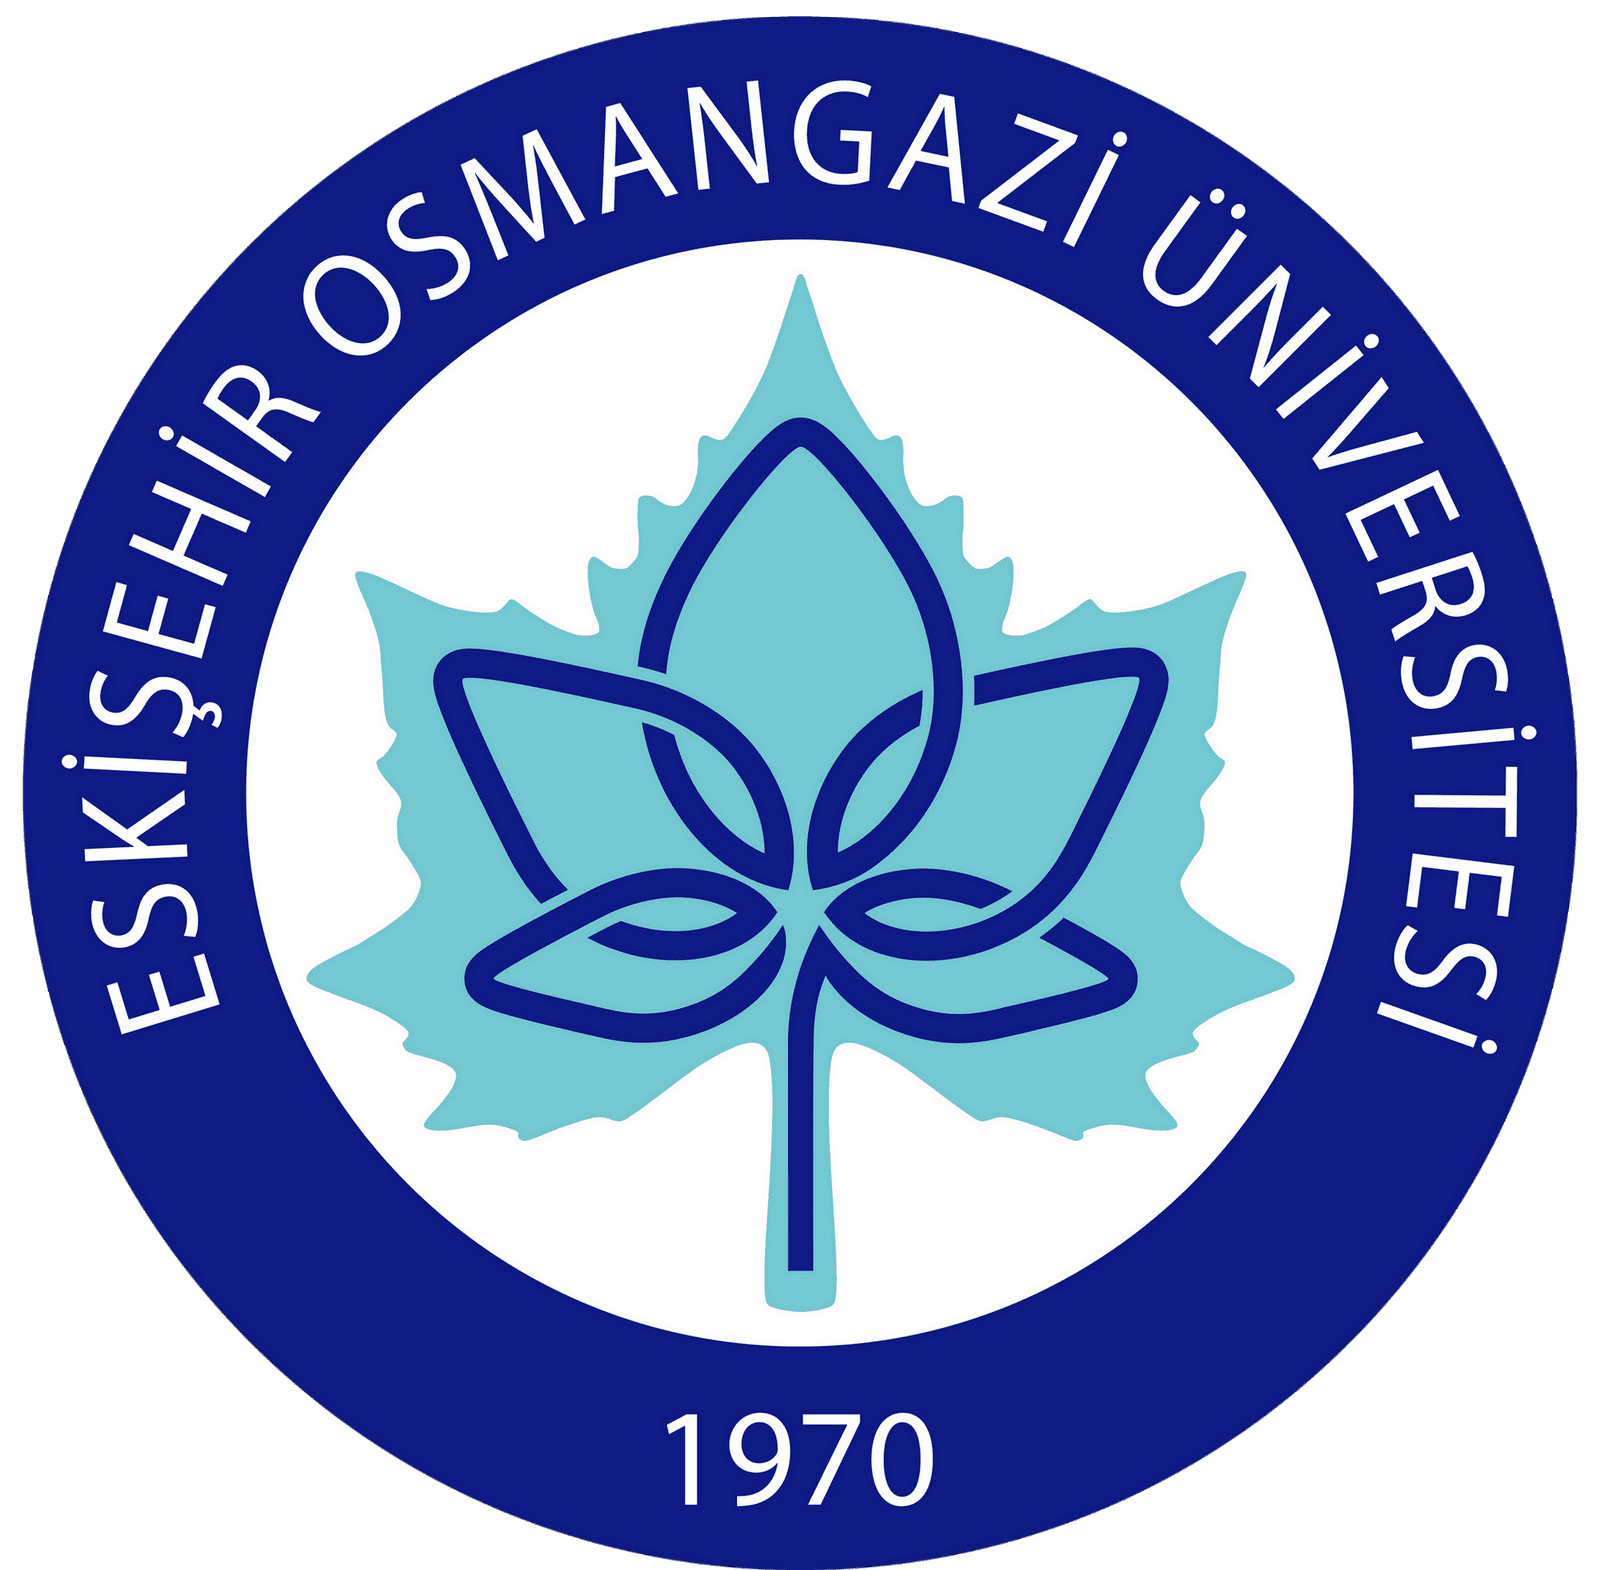 ESOGÜ – Eski?ehir Osmangazi Üniversitesi Logo - Amblem [ogu.edu.tr]